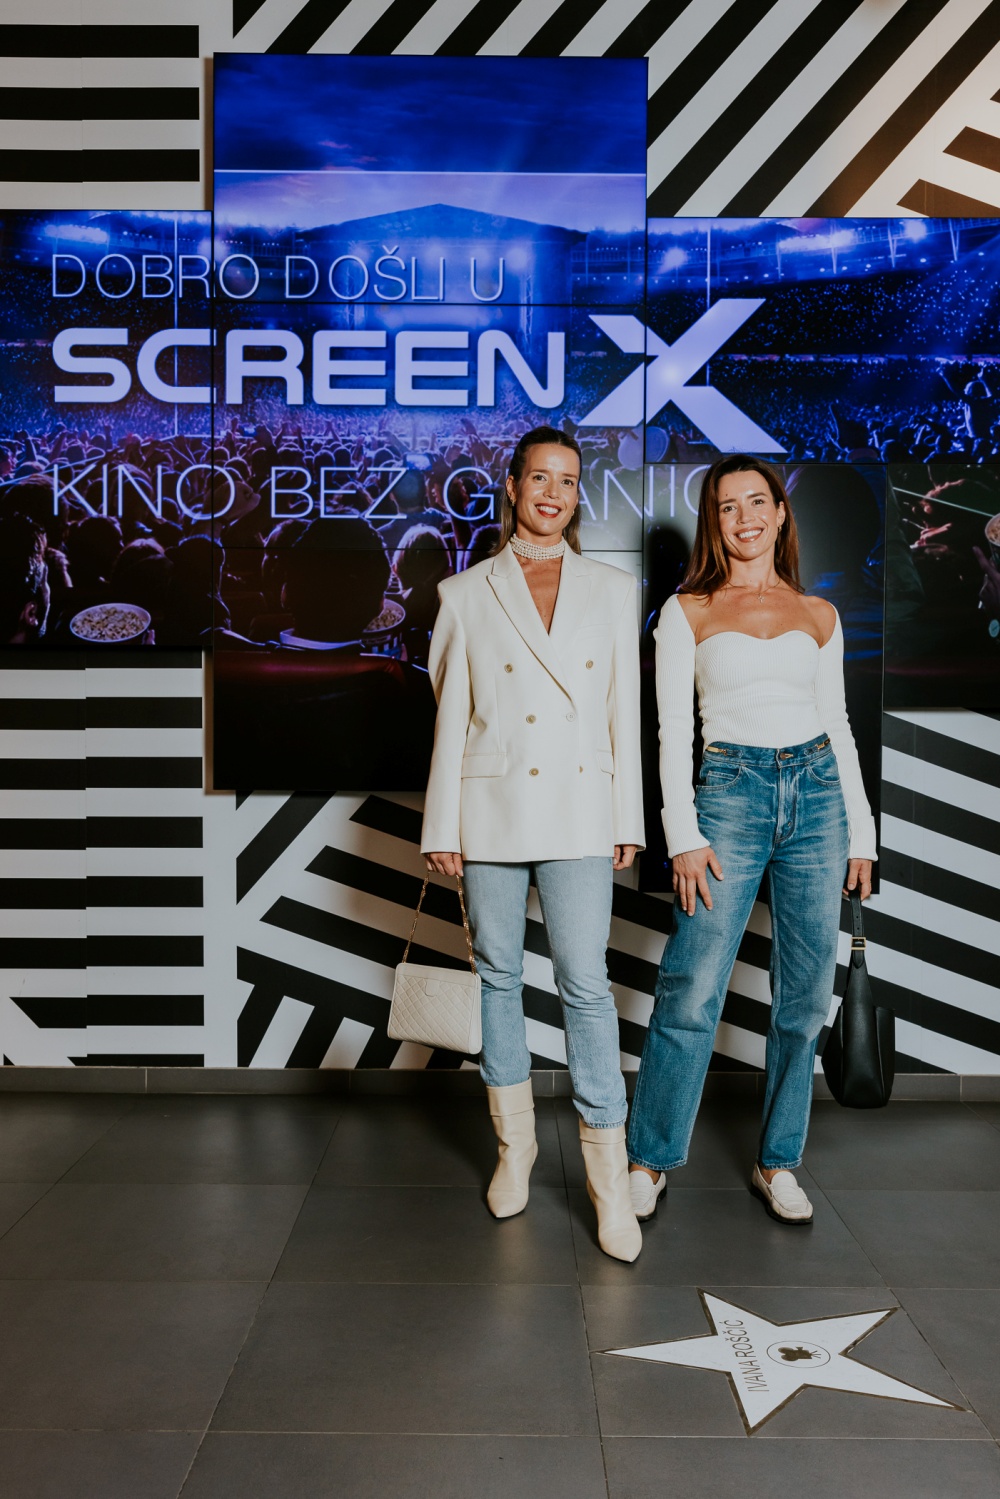 CineStar otvorio prvi ScreenX u Hrvatskoj – doživite ga u Splitu od 22. studenog!